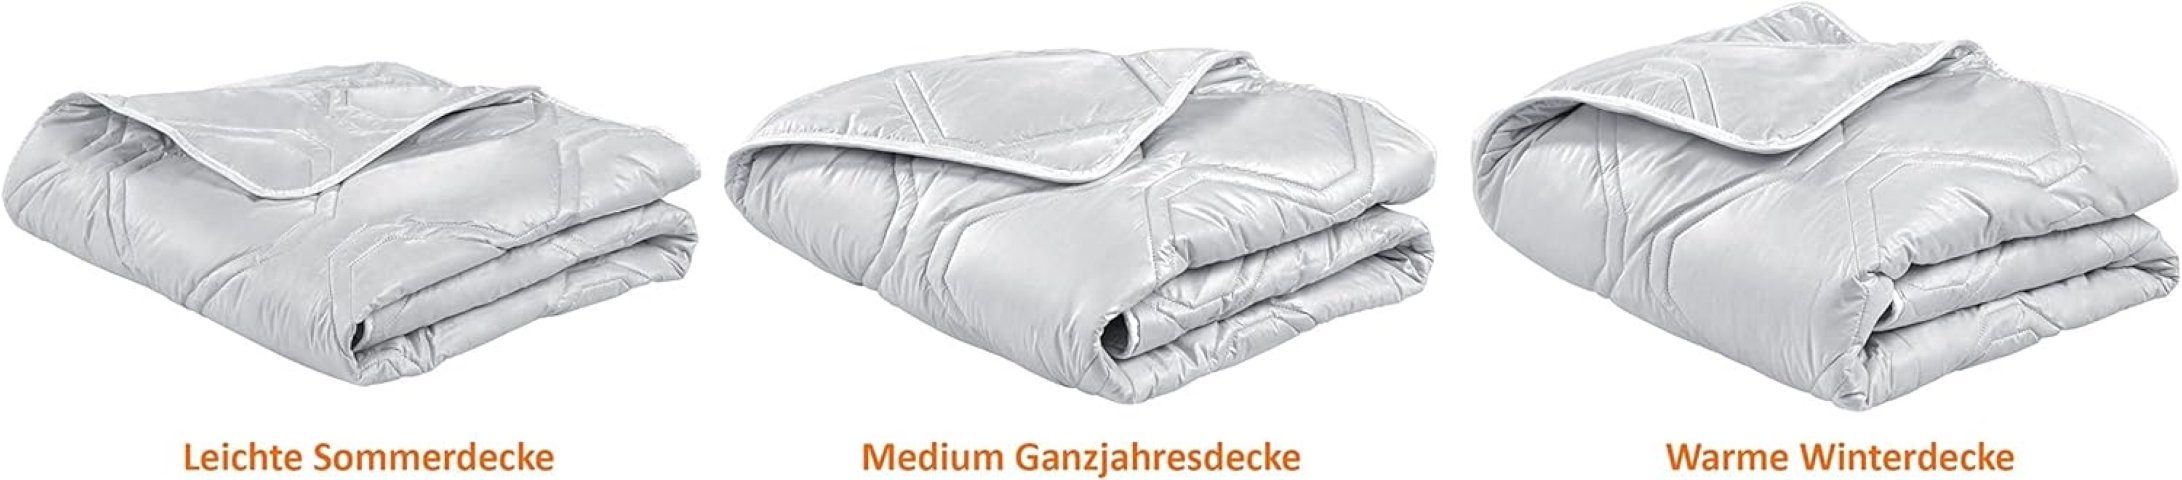 Steppdecke, verschiedenen Made Füllung: Kaschmir Cashmere-Decke in sleepling, Germany Luxus Naturhaarbettdecke, 100% Kaschmir, Wärmeklassen, in